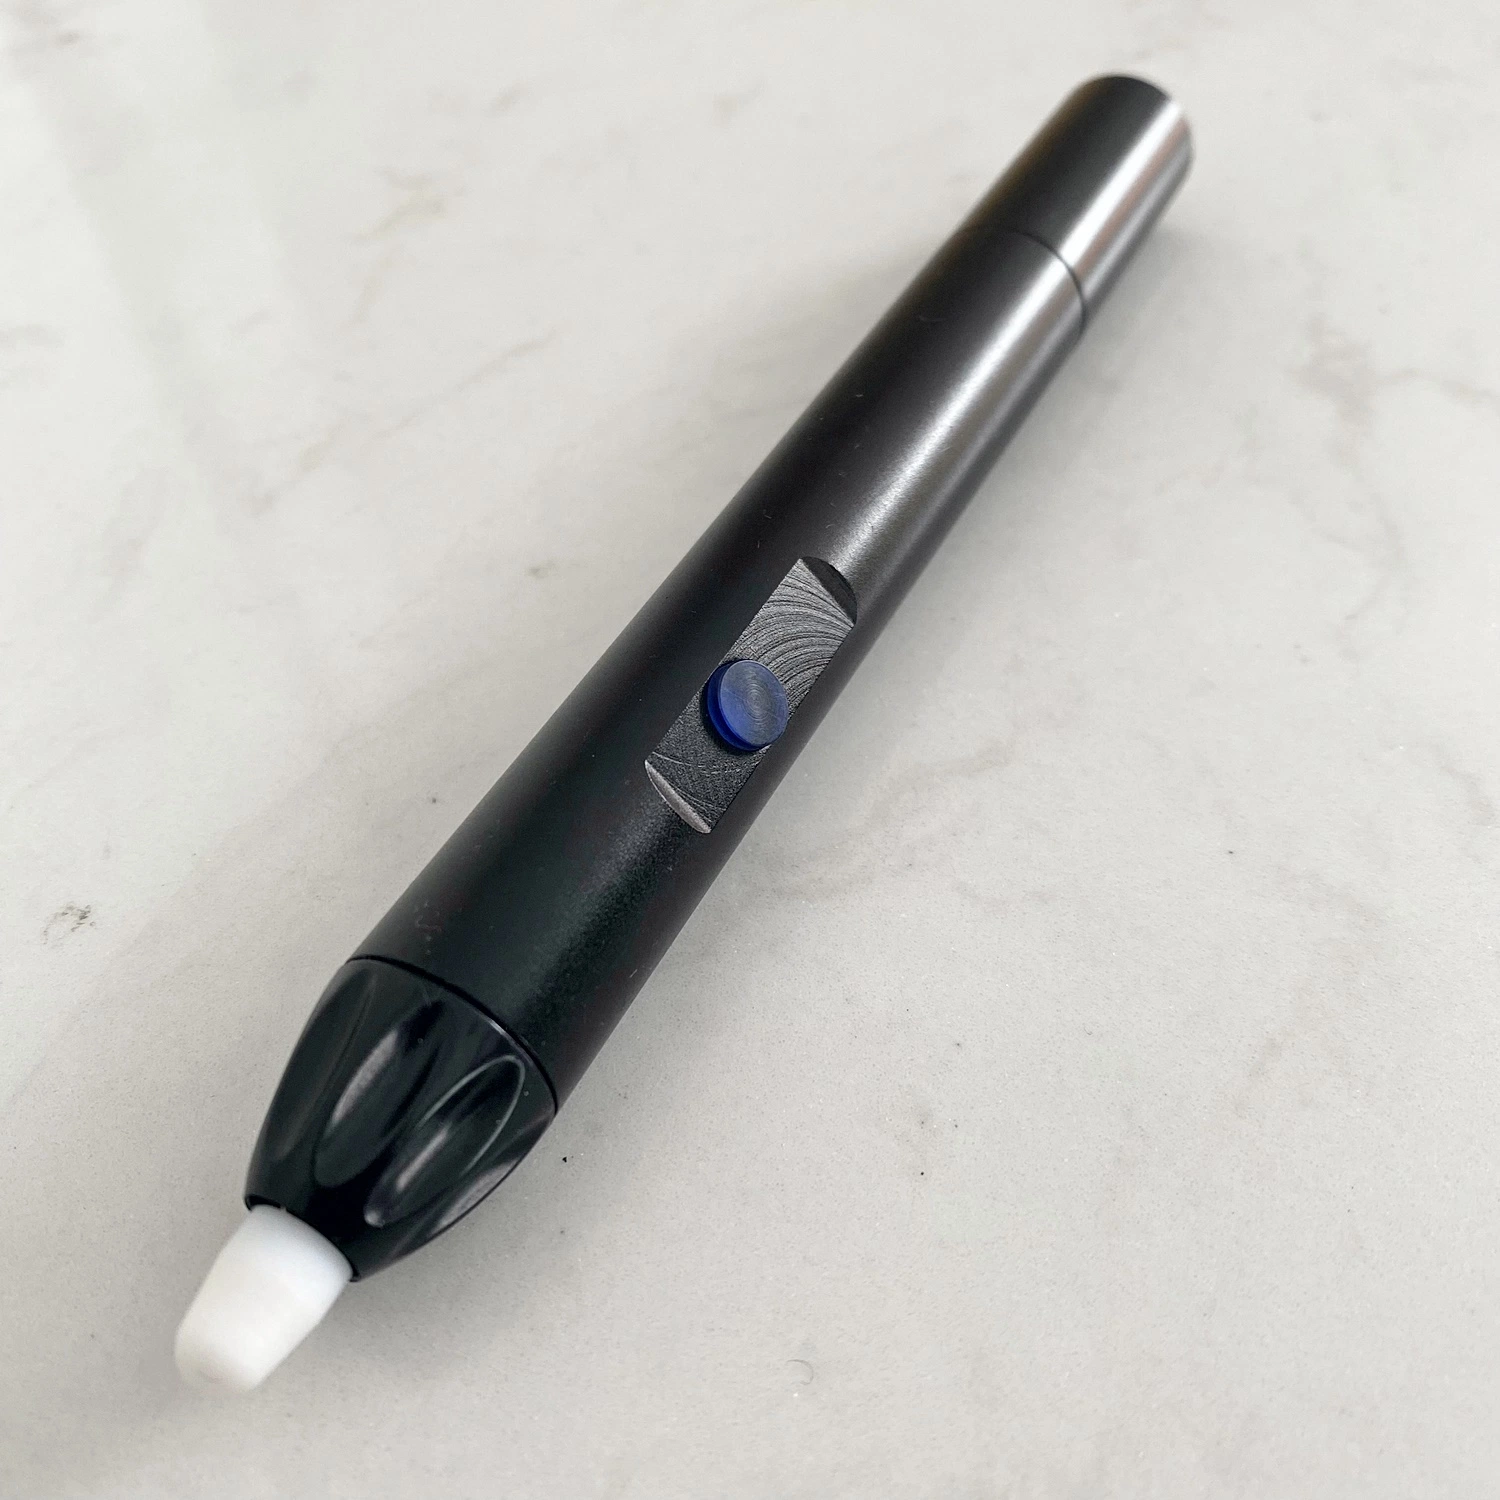 القلم الكهربائي التفاعلي الذي يمكن دفع القلم الإلكتروني مقابل تخفيضات رائعة المدرسة والمكتب تاليبك P30m